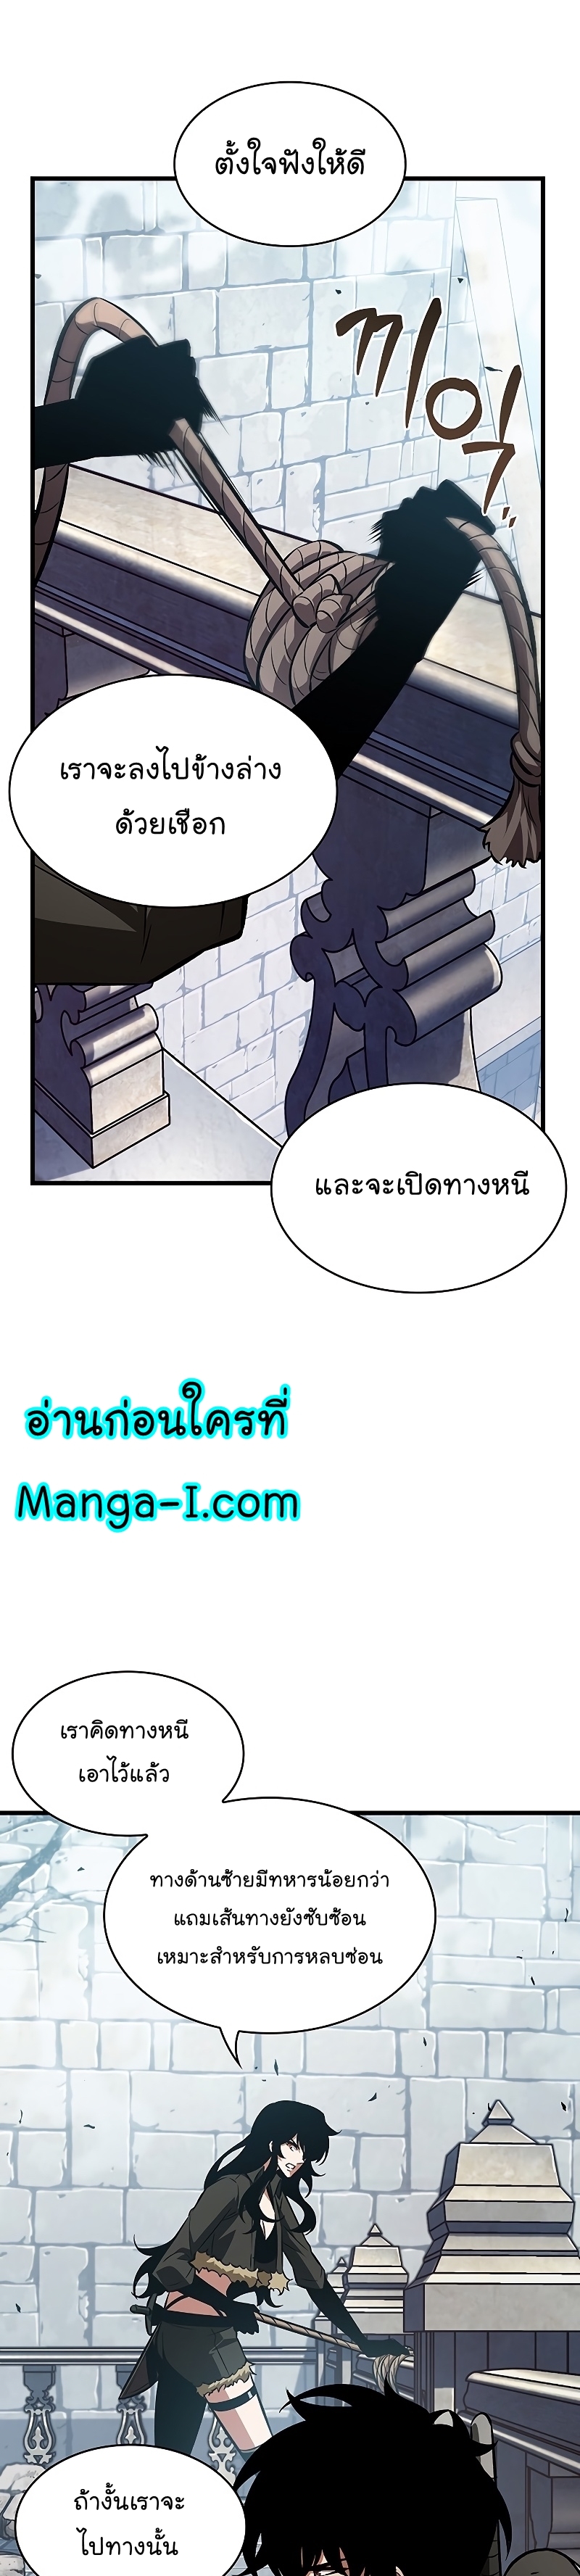 Manga I Manwha Pick Me 49 (31)